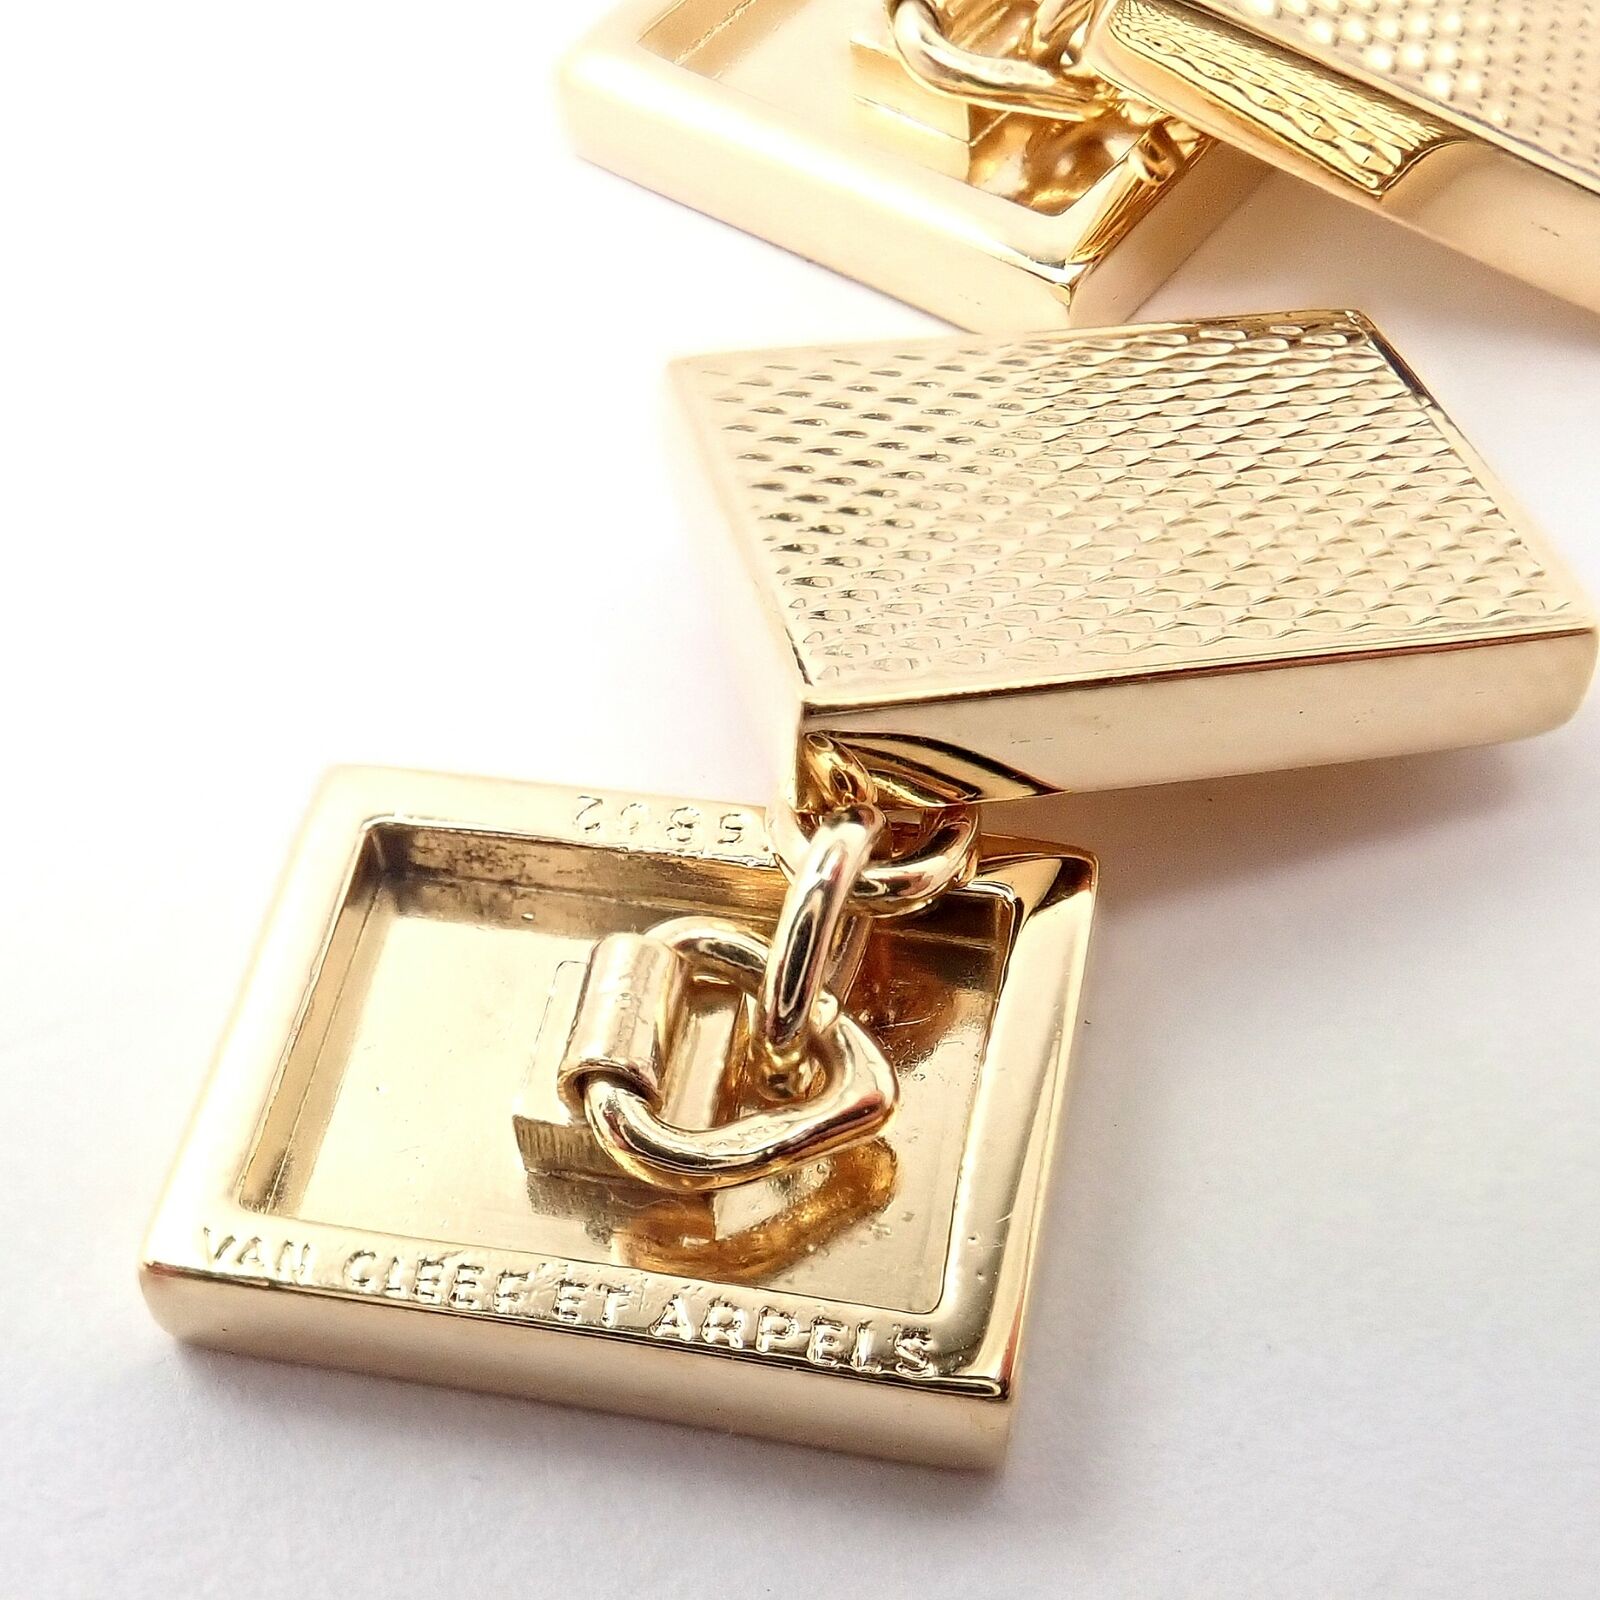 Van Cleef & Arpels Jewelry & Watches:Men's Jewelry:Cufflinks Rare! Authentic Van Cleef & Arpels 18k Yellow Gold Vintage Rectangle Cufflinks